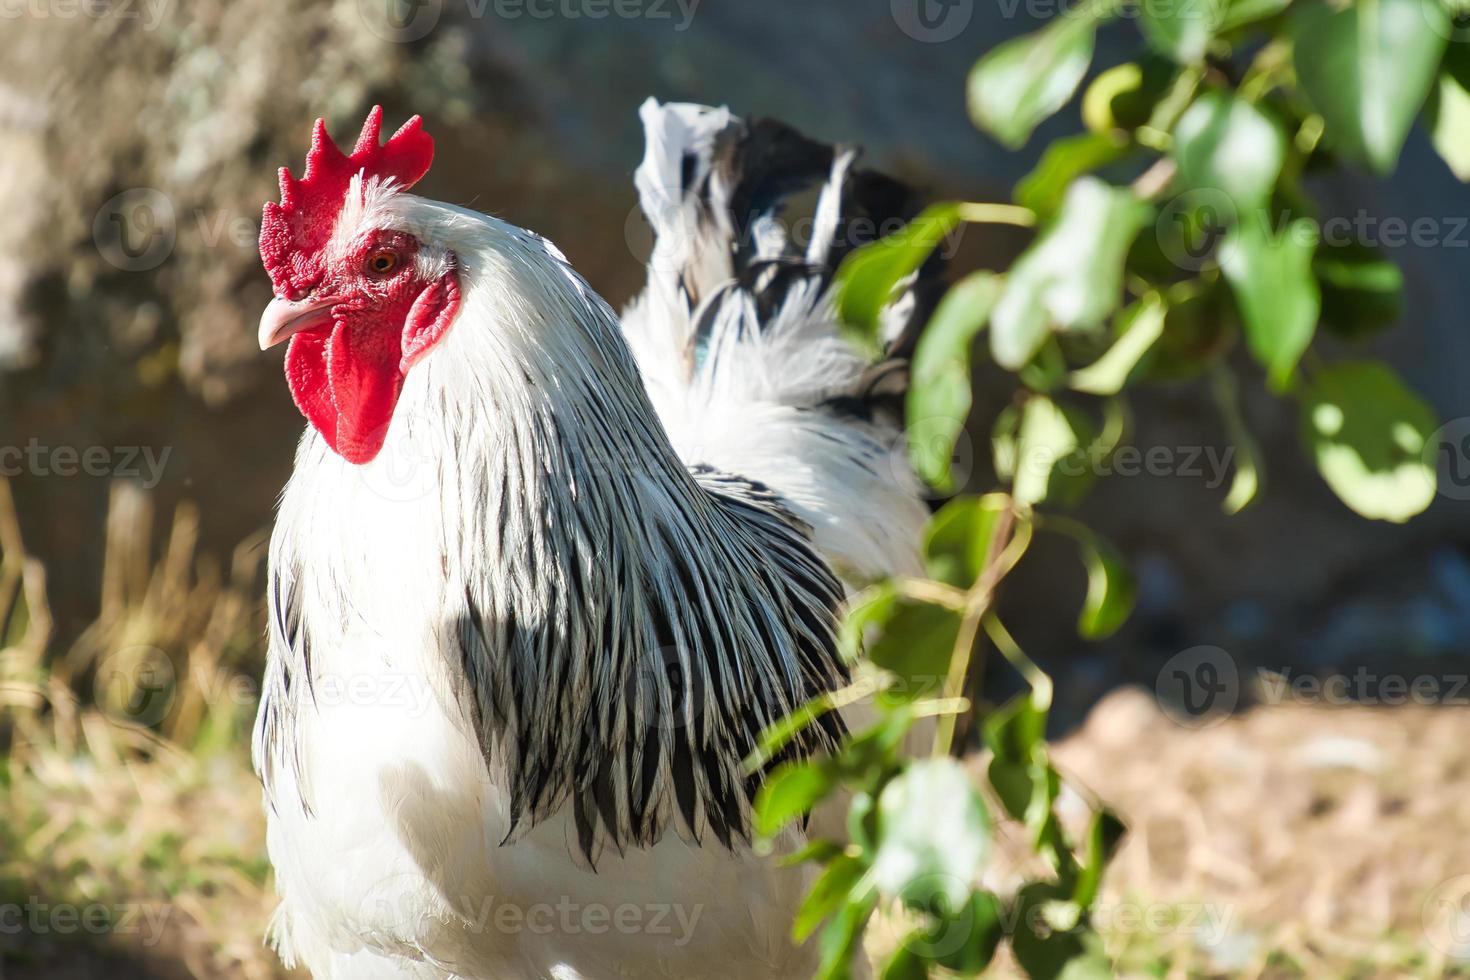 frango com penas brancas e pretas. bico vermelho e pente. animal de fazenda na fazenda foto